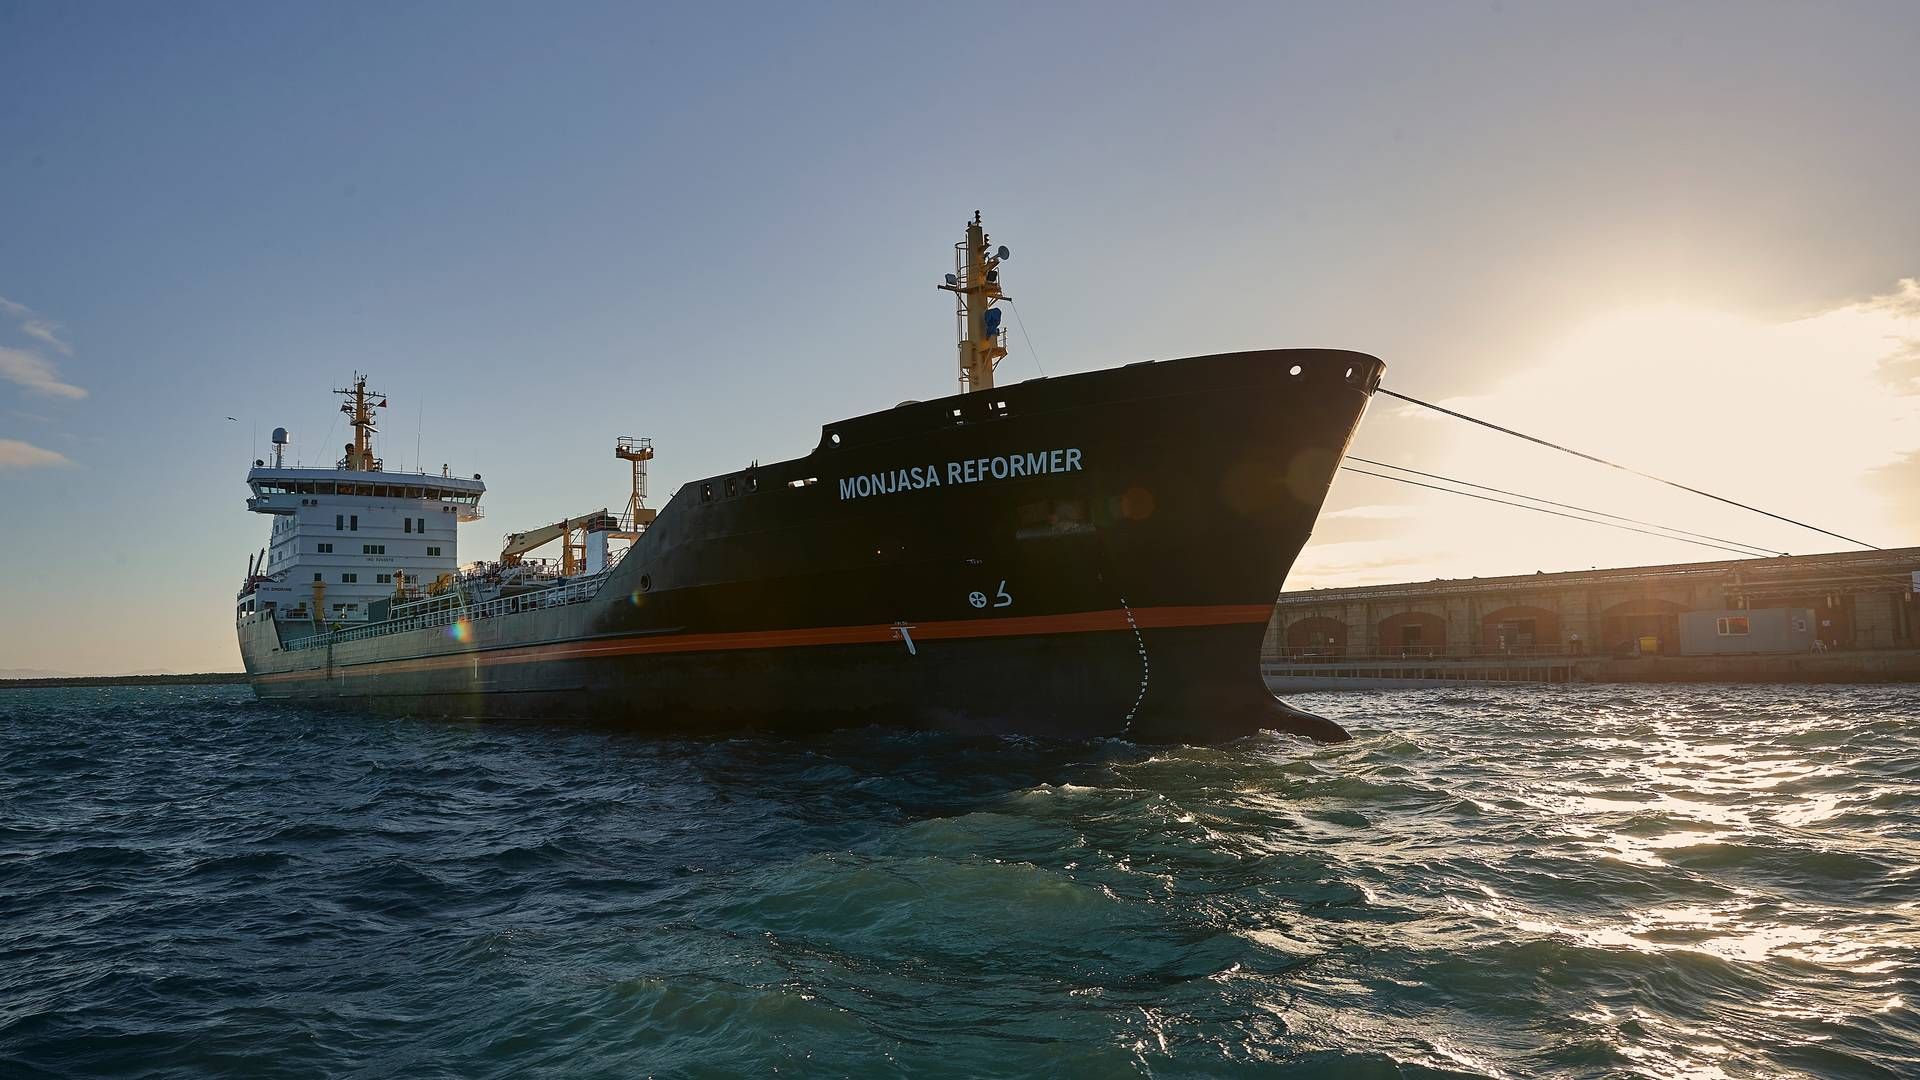 Tankskibet Monjasa Reformer er kommet på overarbejde i Vestafrika med at levere bunkerolie til de mange ekstra containerskibe, der på grund af uroligheder og missilangreb har valgt at sejle syd om Afrika i stedet for igennem Det Røde Hav og Suez-kanalen. | Foto: Monjasa